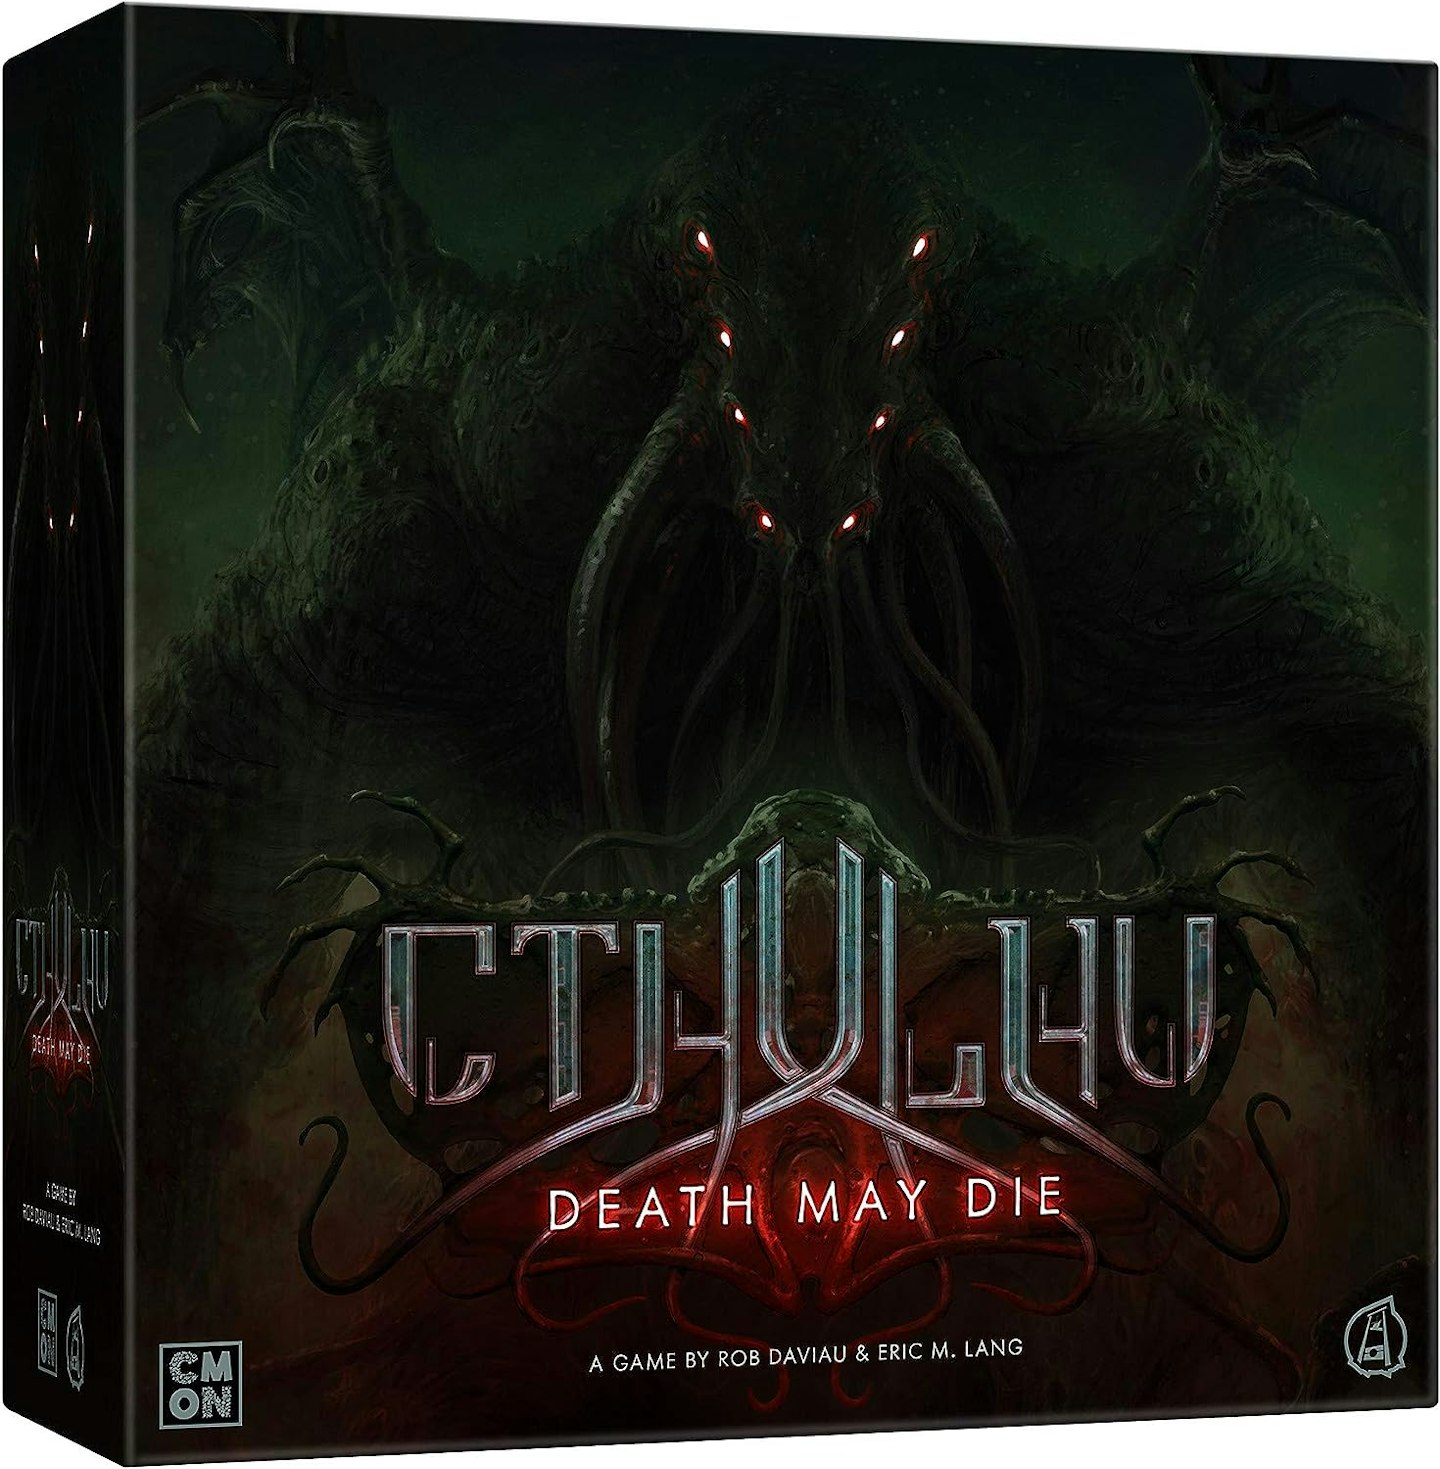 Cthulhu: Death May Die game